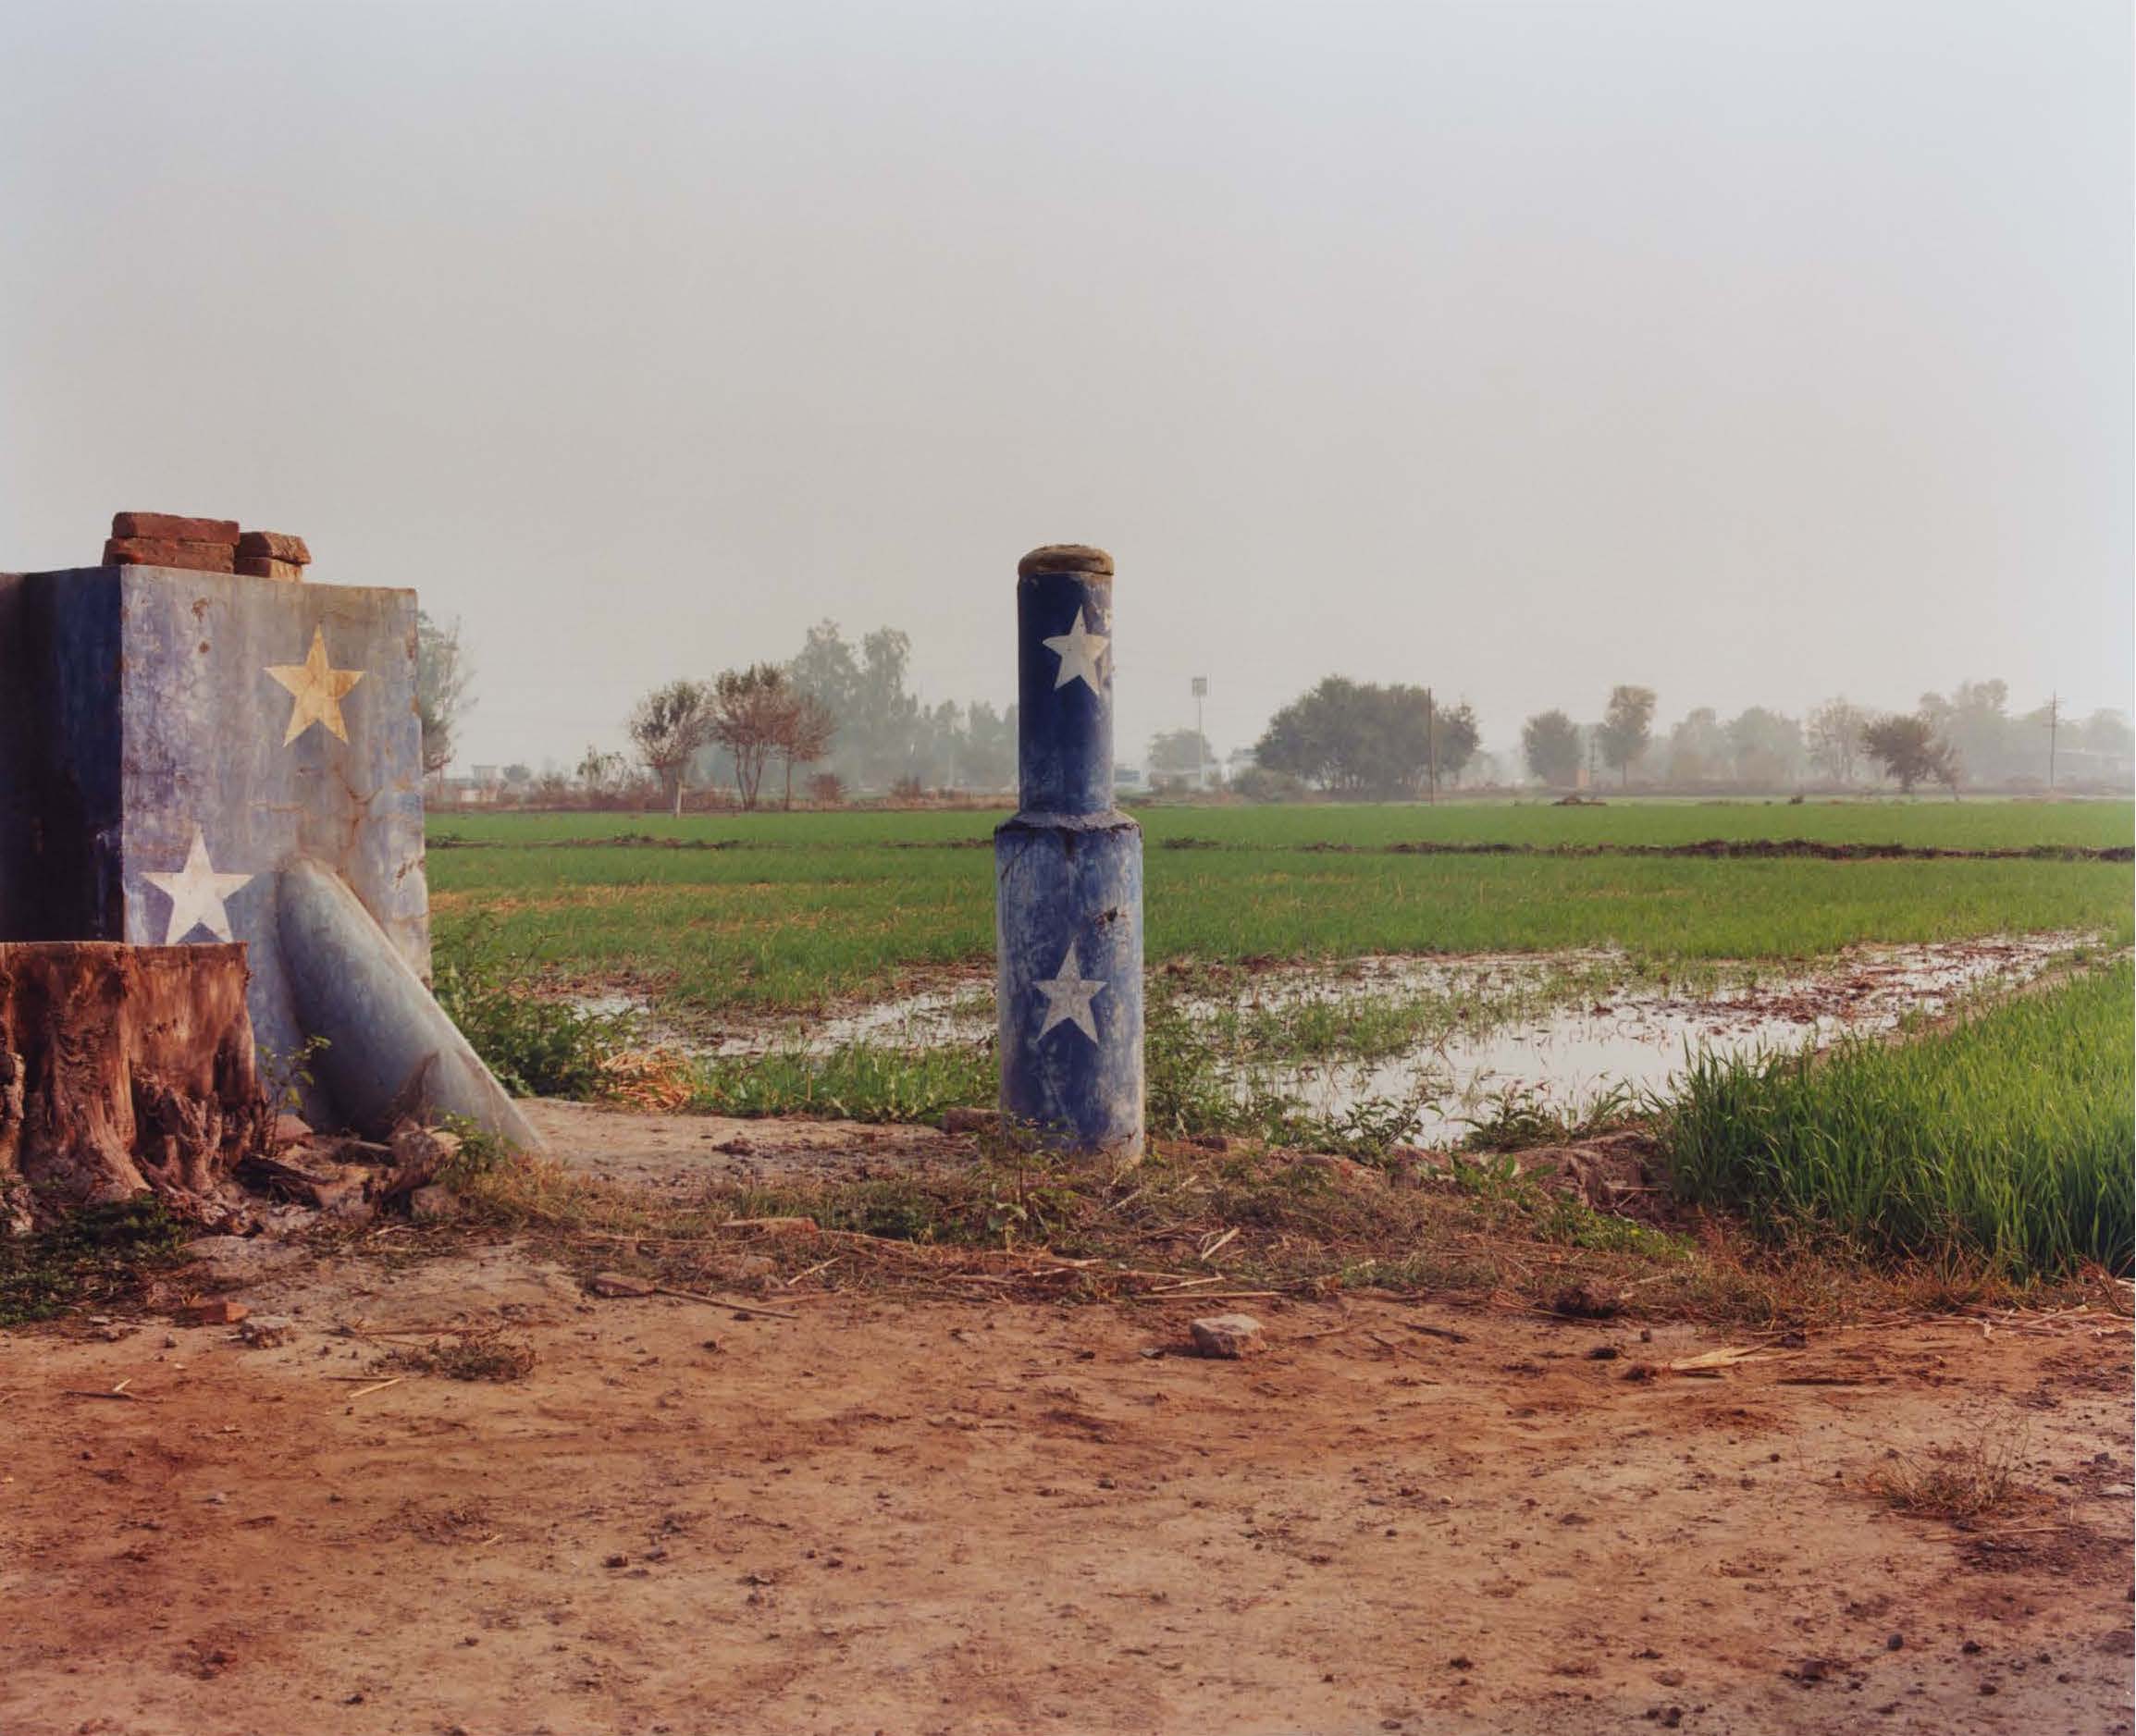 Shashank Peshawaria, Photography, flags, Punjab fields